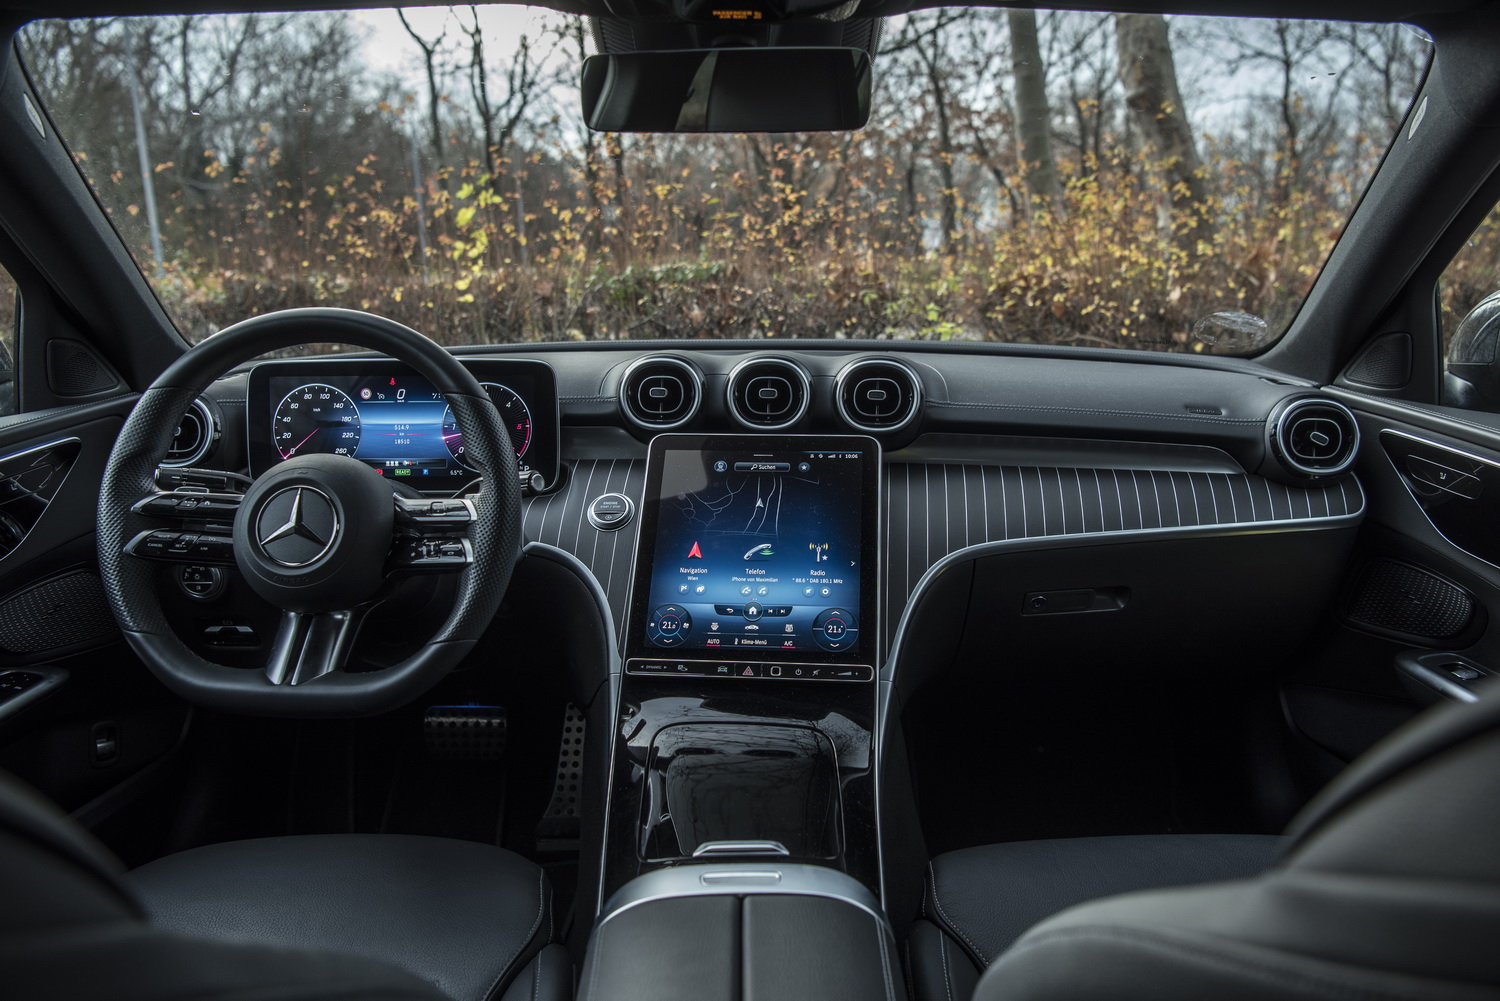 Der schwarz gehaltene Innenraum einer neuen Mercedes C-Klasse mit großem Touchscreen in der Mitte.